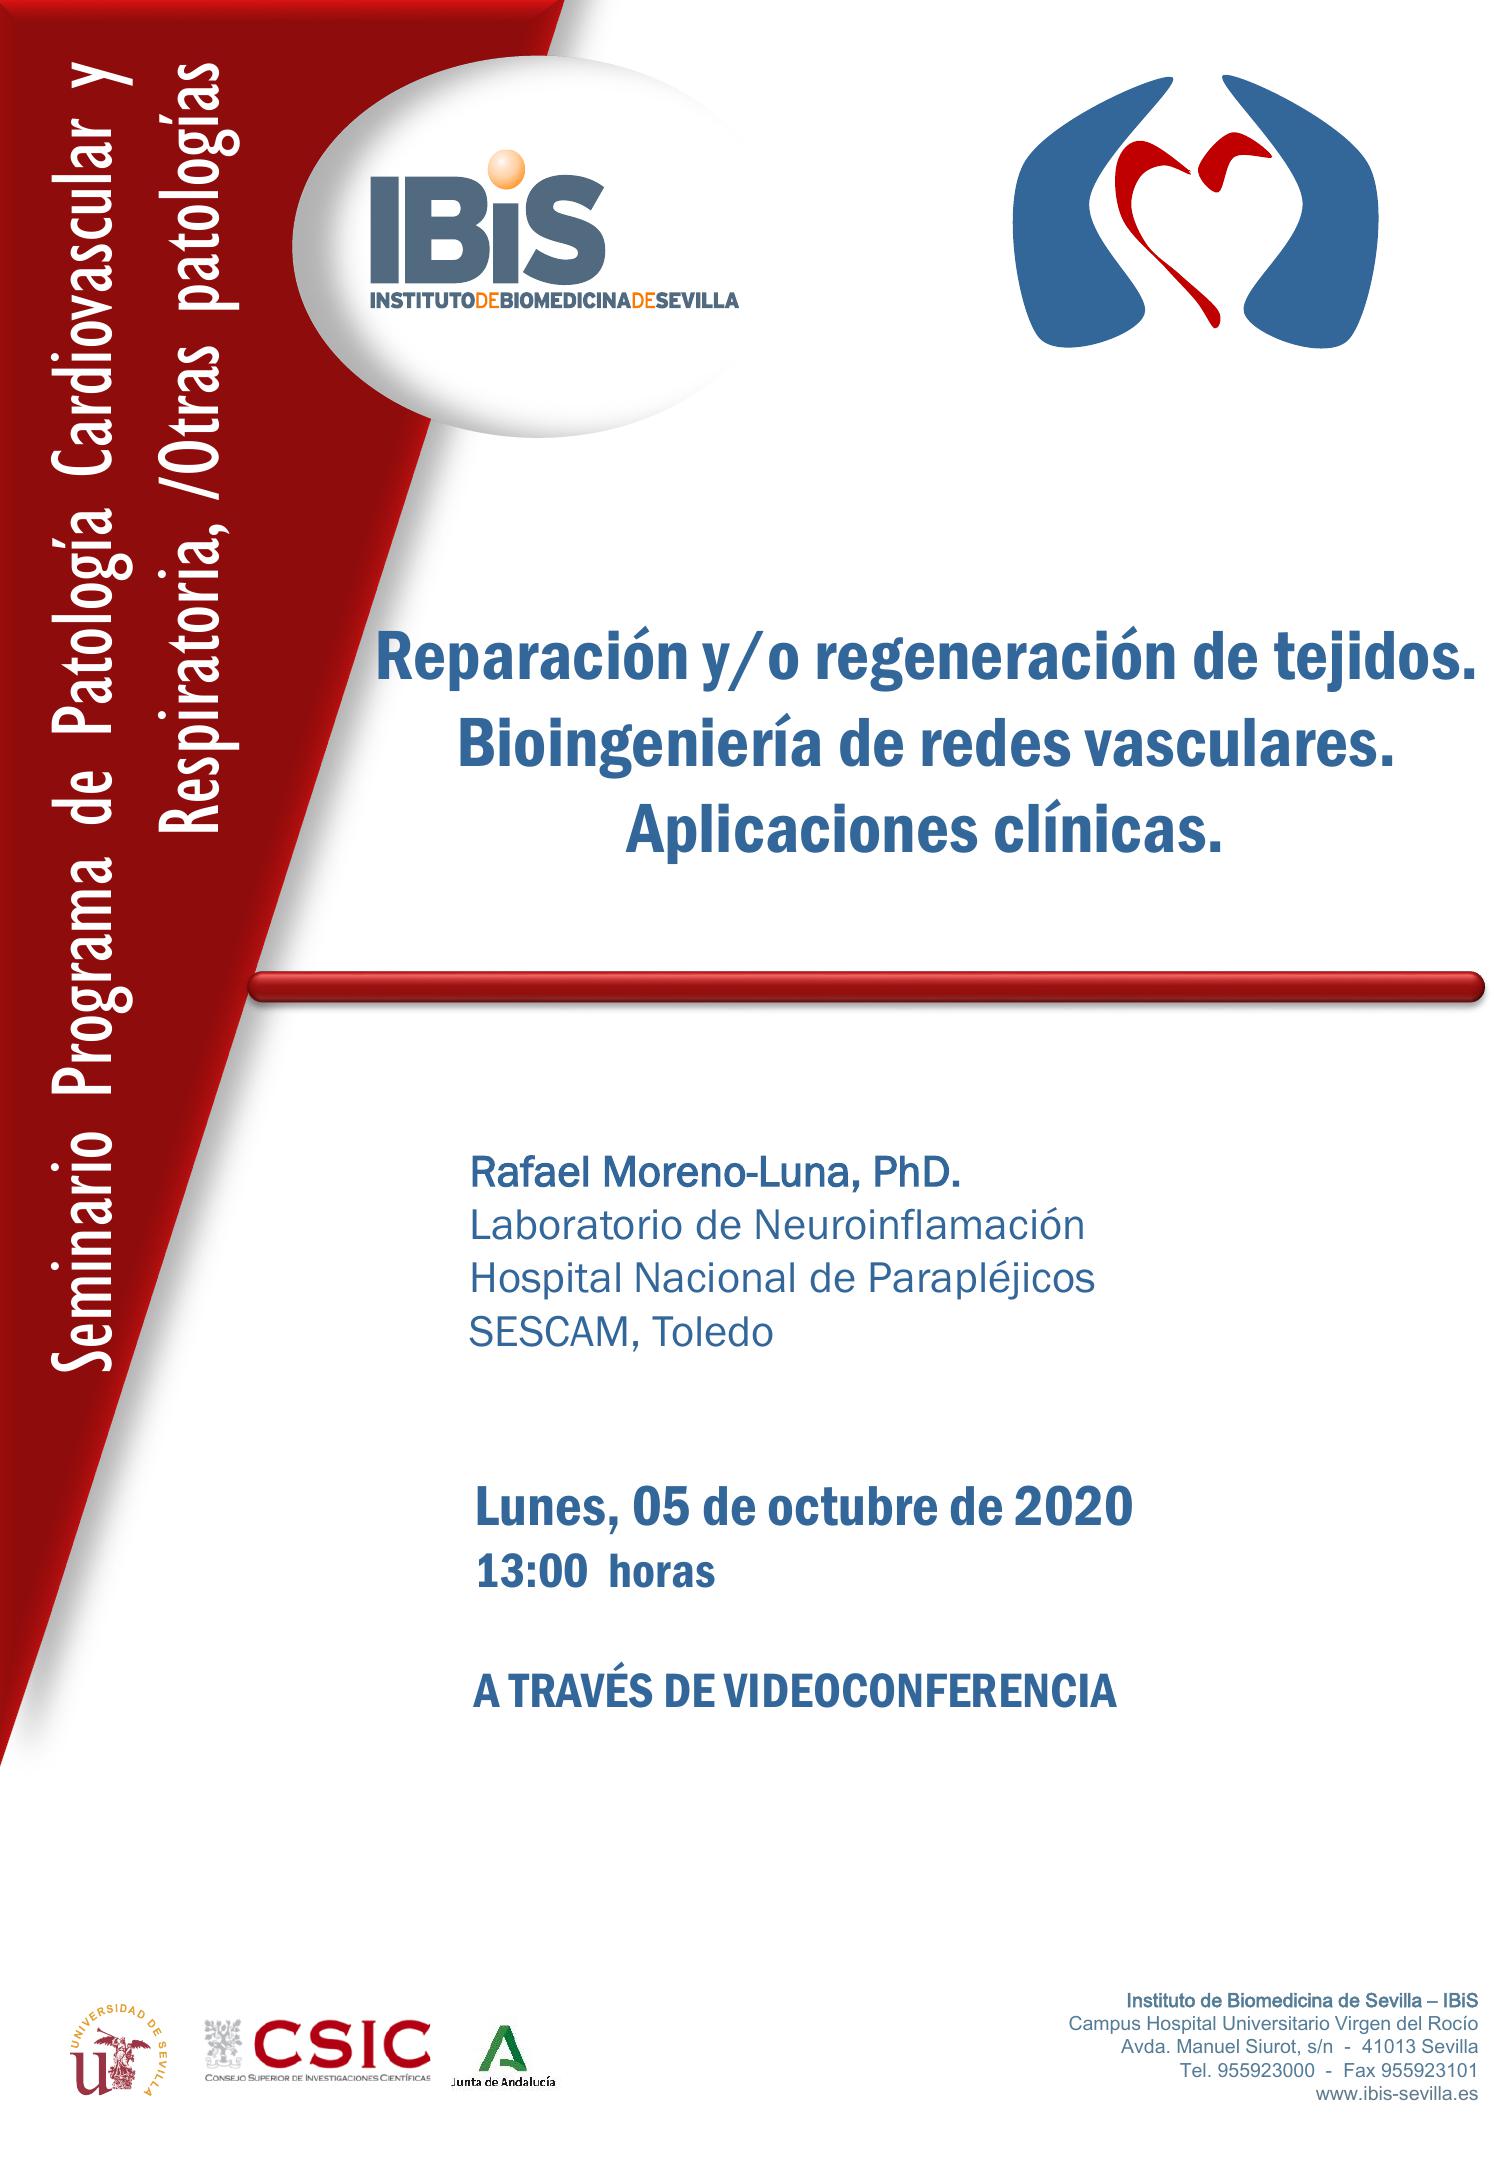 Poster: Reparación y/o regeneración de tejidos. Bioingeniería de redes vasculares. Aplicaciones clínicas